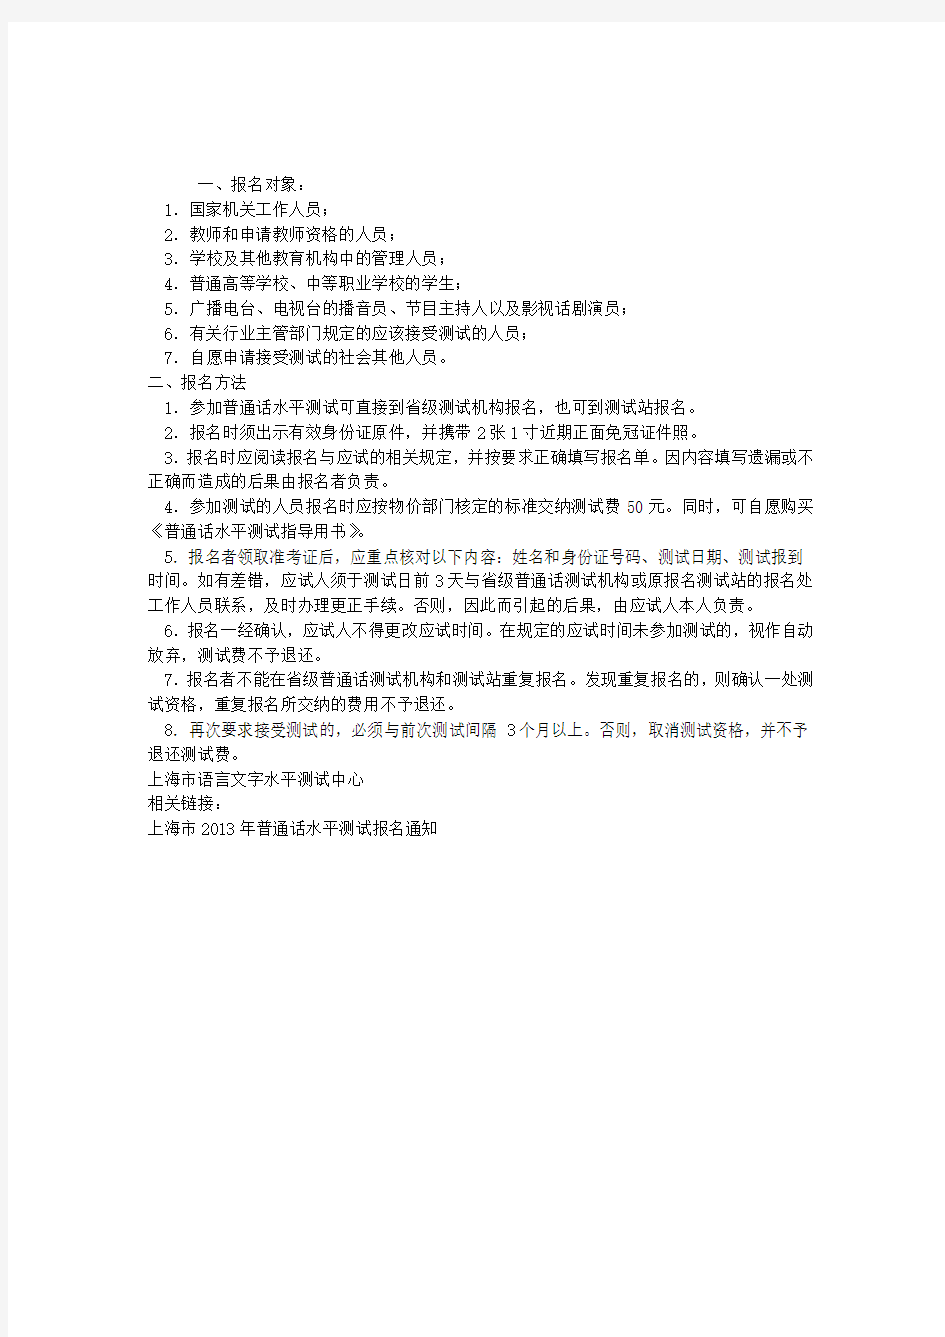 上海普通话水平测试个人报名规定